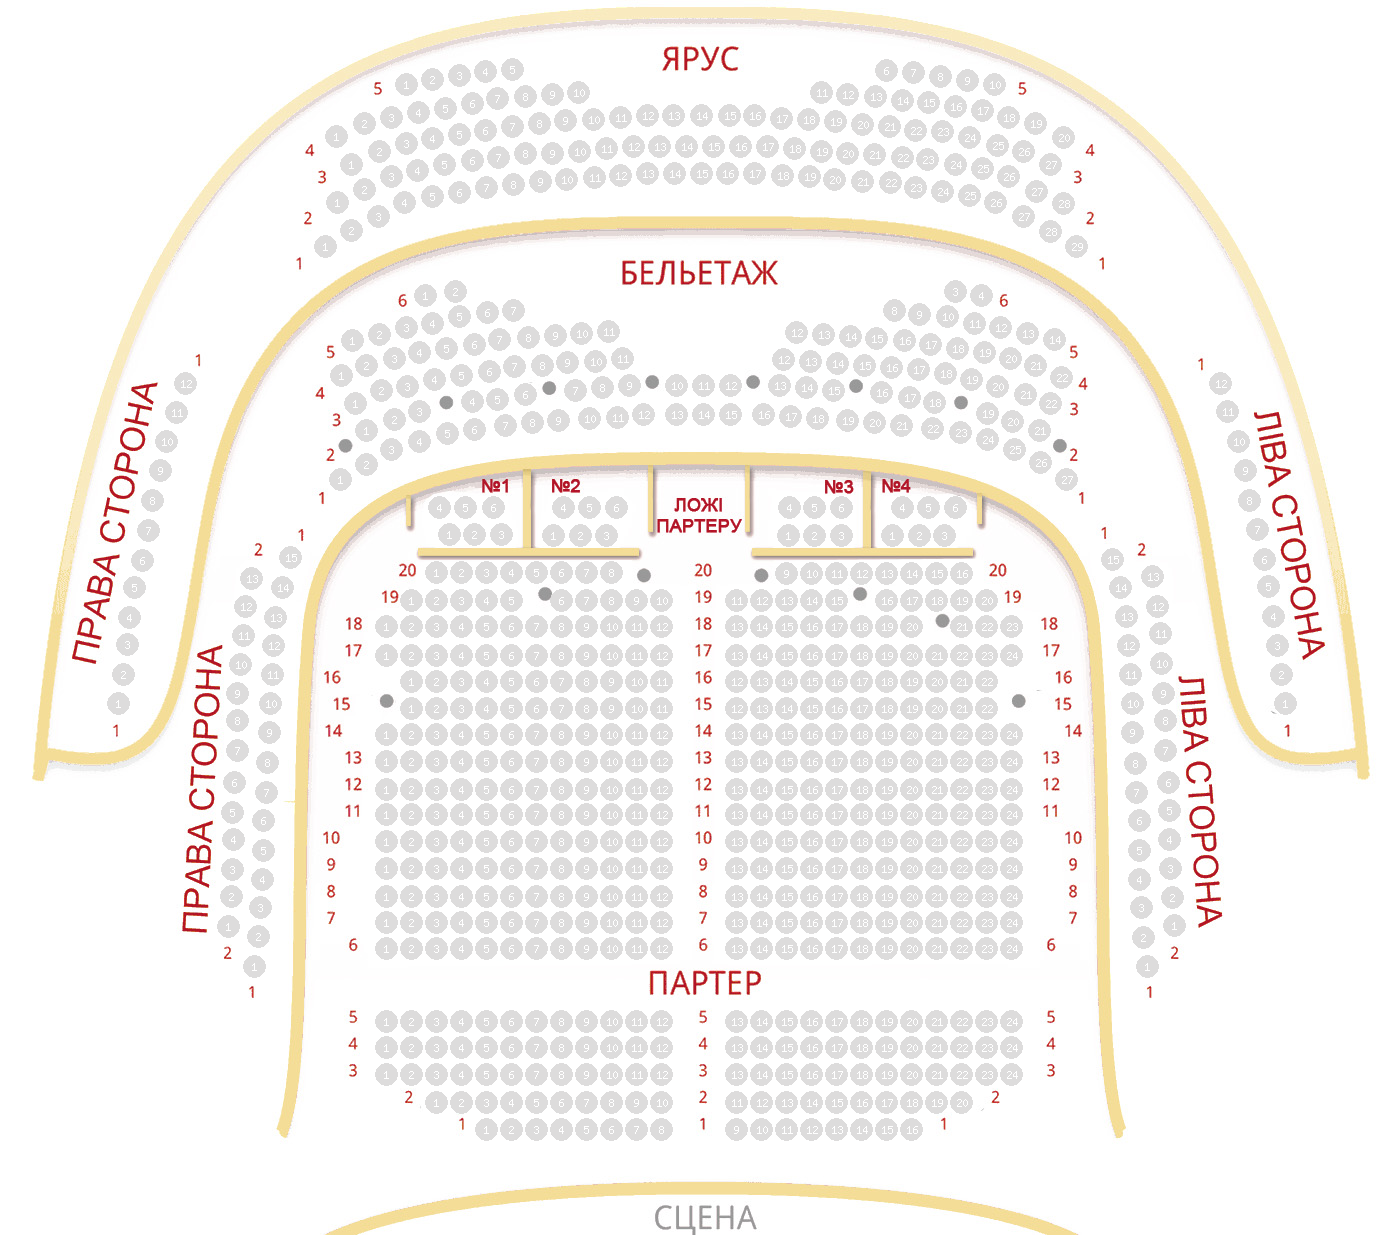 Схема зала театр оперетты москва